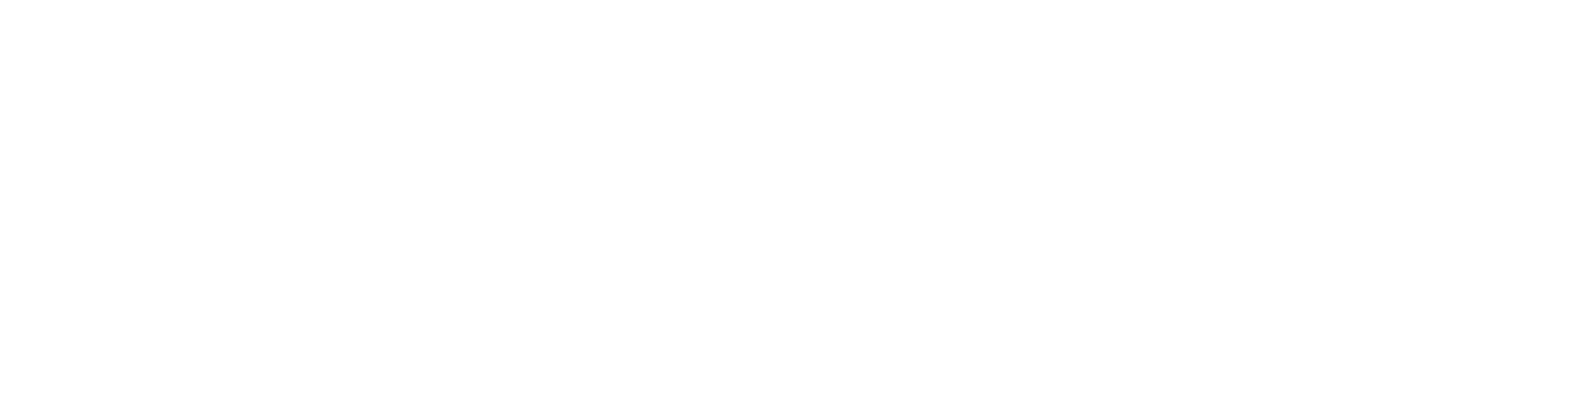 Ventas logo large for dark backgrounds (transparent PNG)